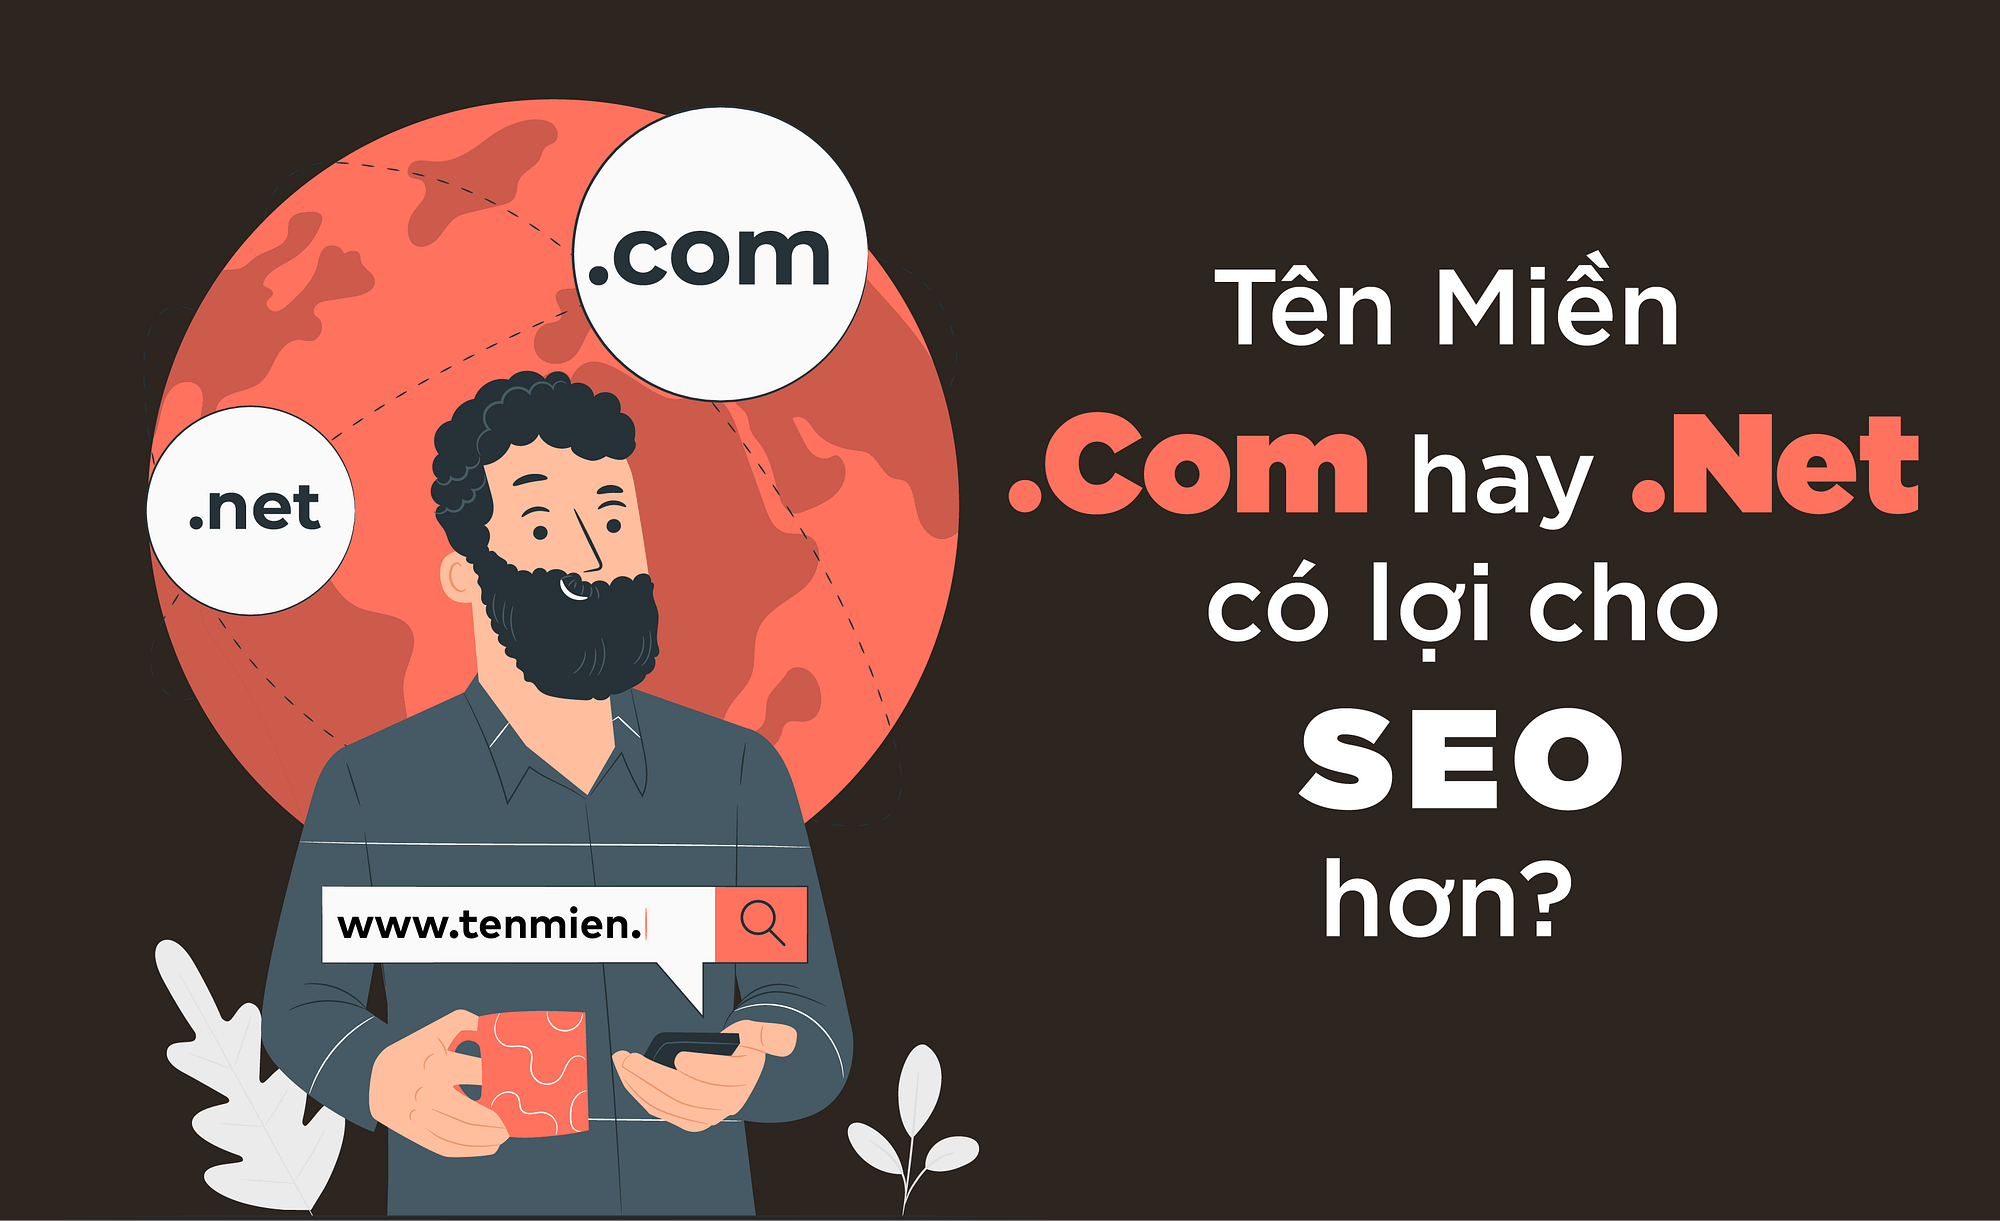 Chọn Tên Miền .Com hay .Net? Cái Nào Có Lợi Cho SEO Hơn